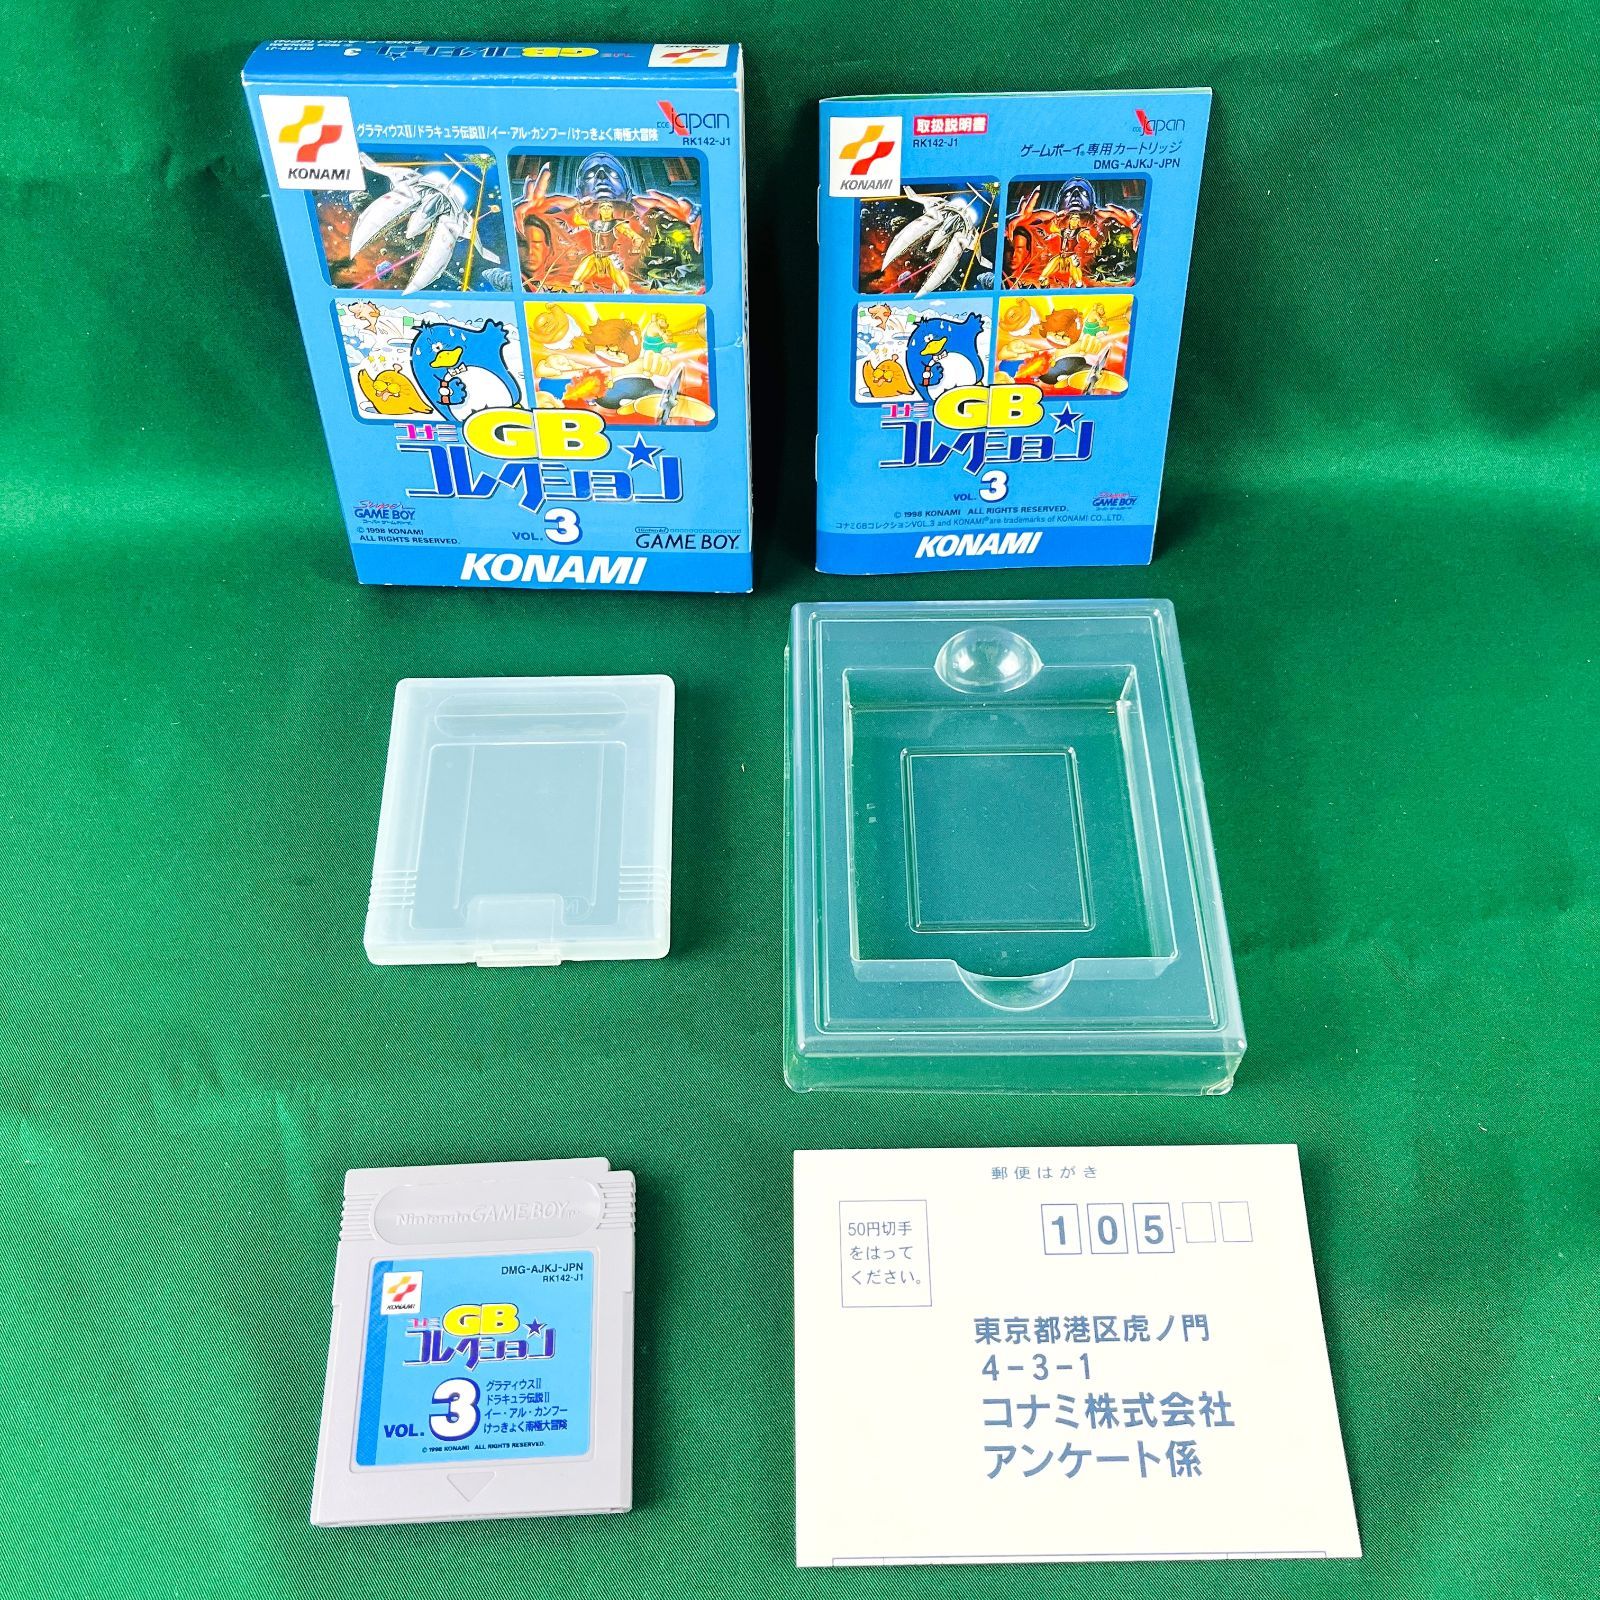 ◇ コナミ GB コレクション 3 ソフト カセット DMG-AJKJ-JPN 